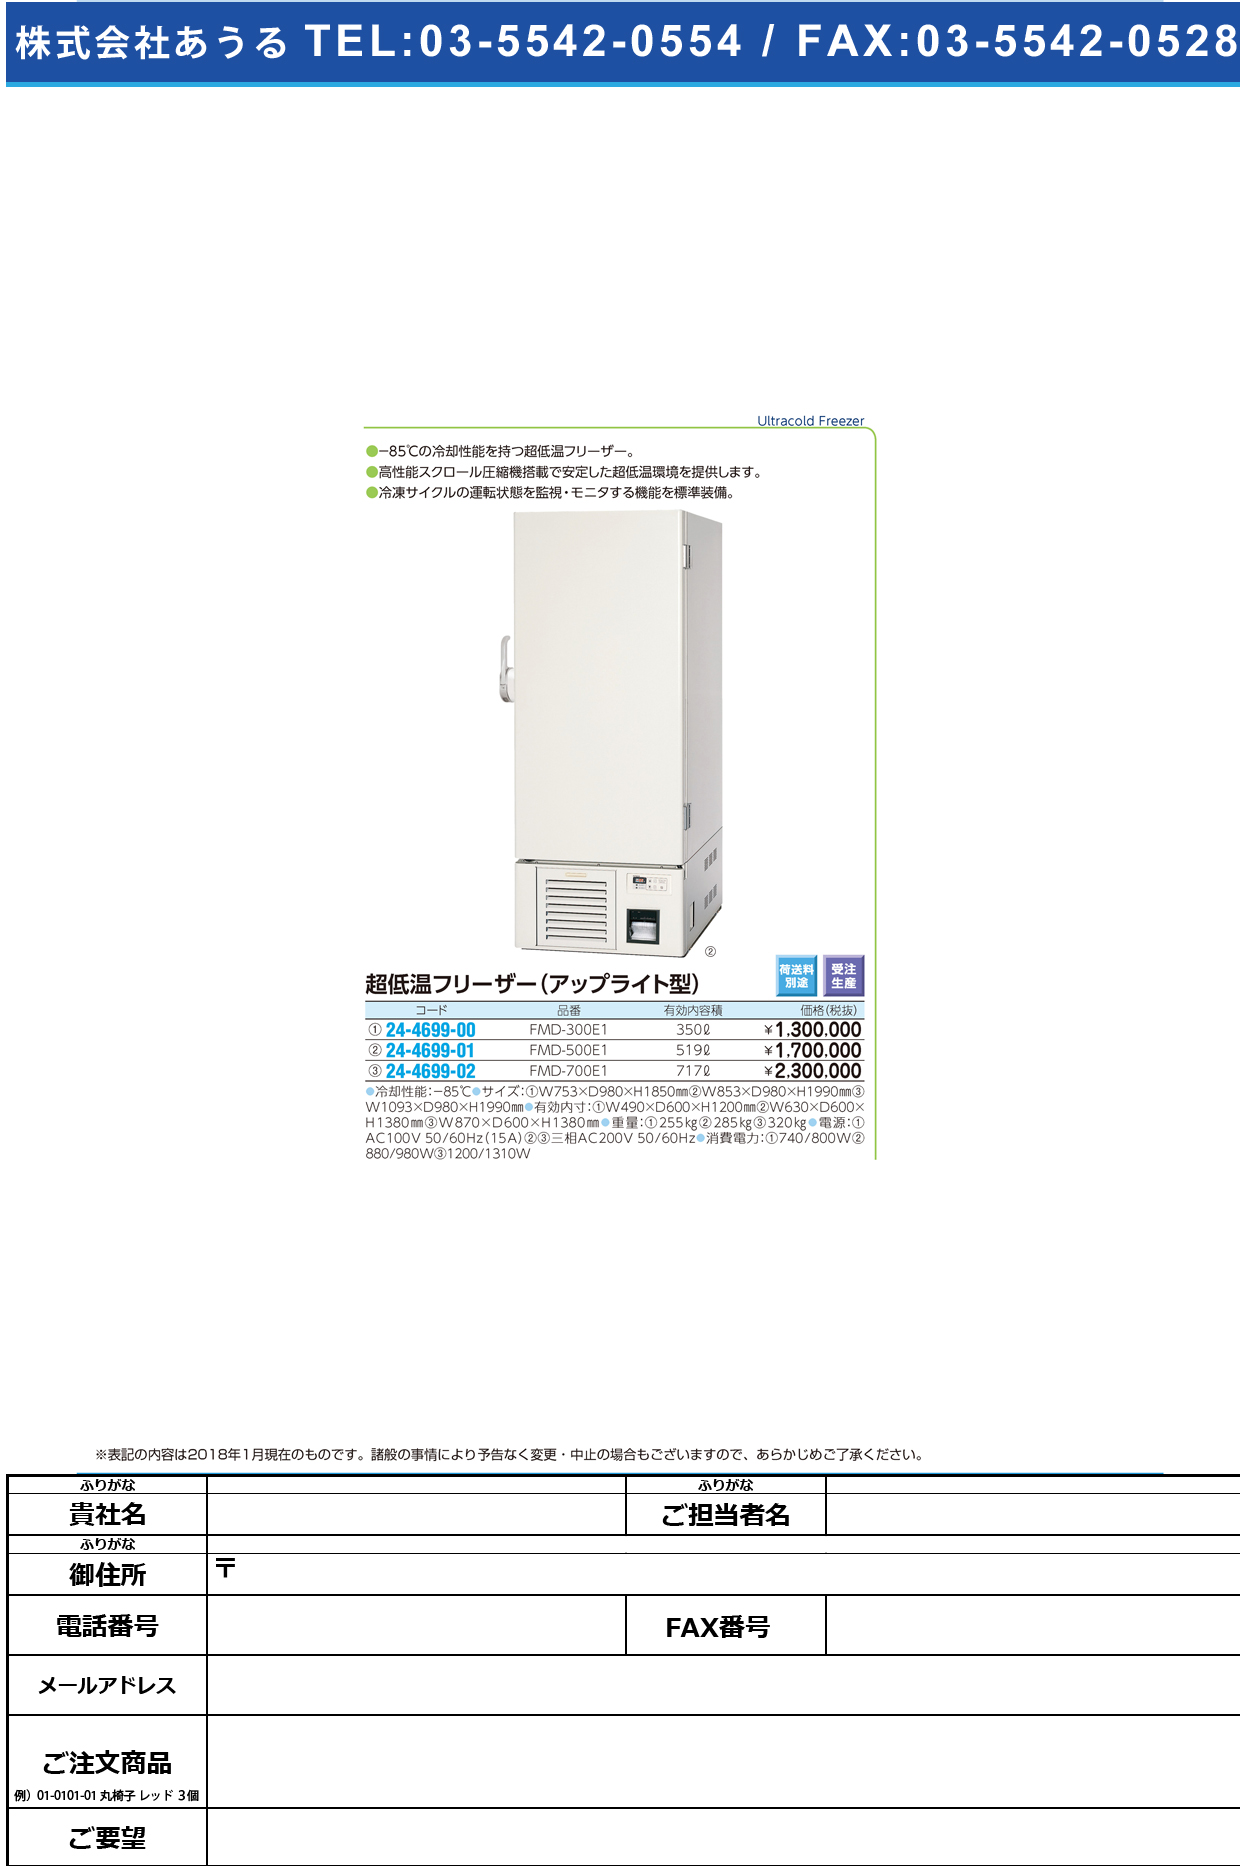 (24-4699-01)超低温フリーザー（アップライト型） FMD-500E1 ﾁｮｳﾃｲｵﾝﾌﾘｰｻﾞｰ(福島工業)【1台単位】【2018年カタログ商品】